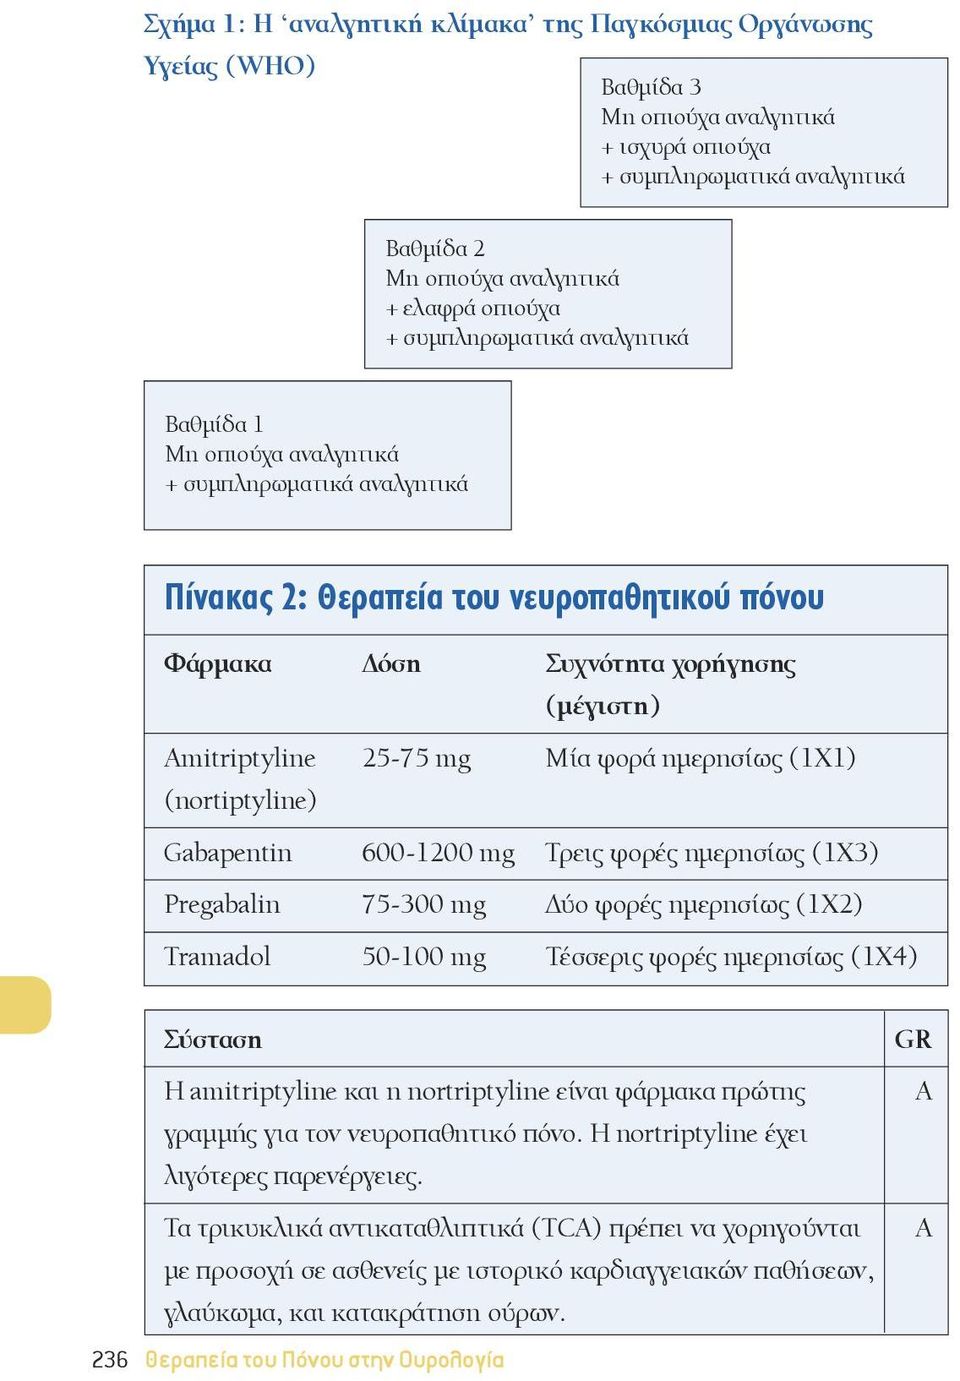 Μία φορά ημερησίως (1Χ1) (nortiptyline) Gabapentin 600-1200 mg Τρεις φορές ημερησίως (1Χ3) Pregabalin 75-300 mg Δύο φορές ημερησίως (1Χ2) Tramadol 50-100 mg Τέσσερις φορές ημερησίως (1Χ4) Σύσταση Η